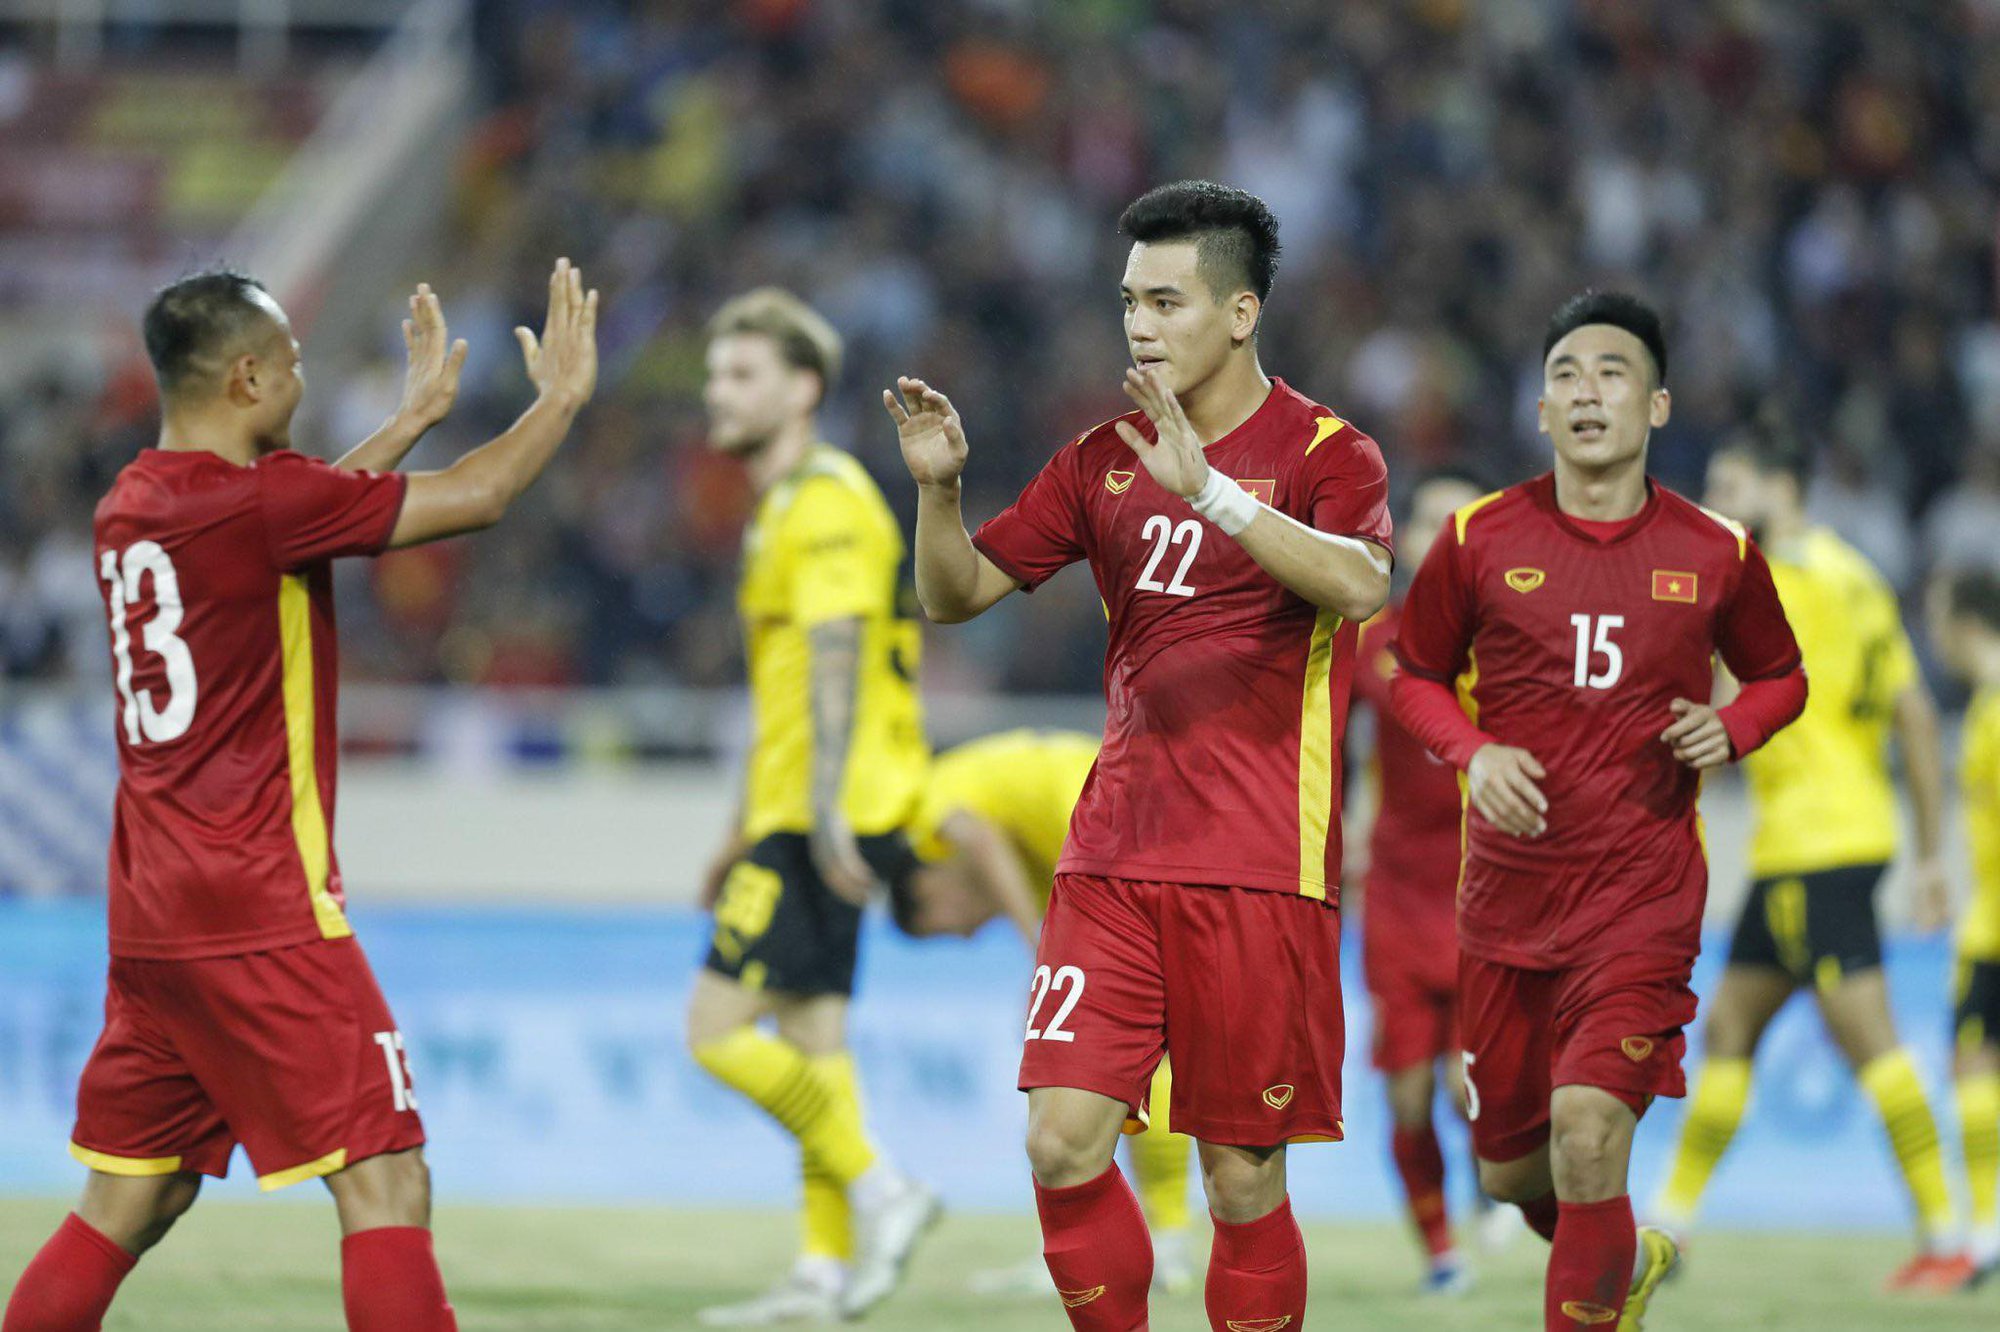 Tiến Linh, Tuấn Hải lập công giúp ĐT Việt Nam thắng ngược Dortmund - Ảnh 4.